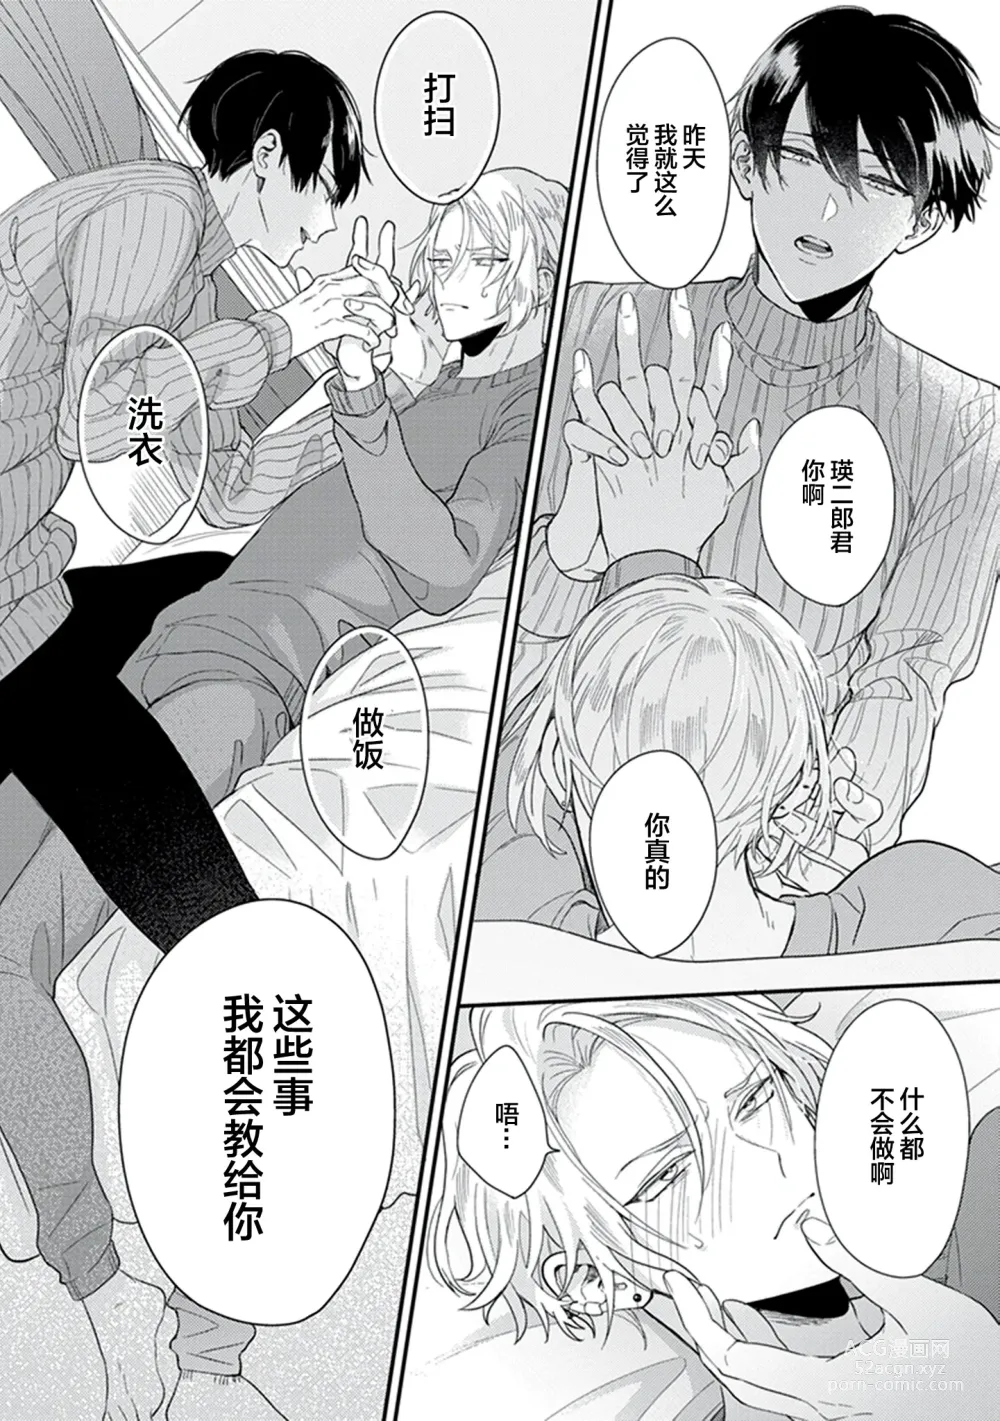 Page 26 of manga 爸爸修行中的二把手被糟糕的男人盯上了